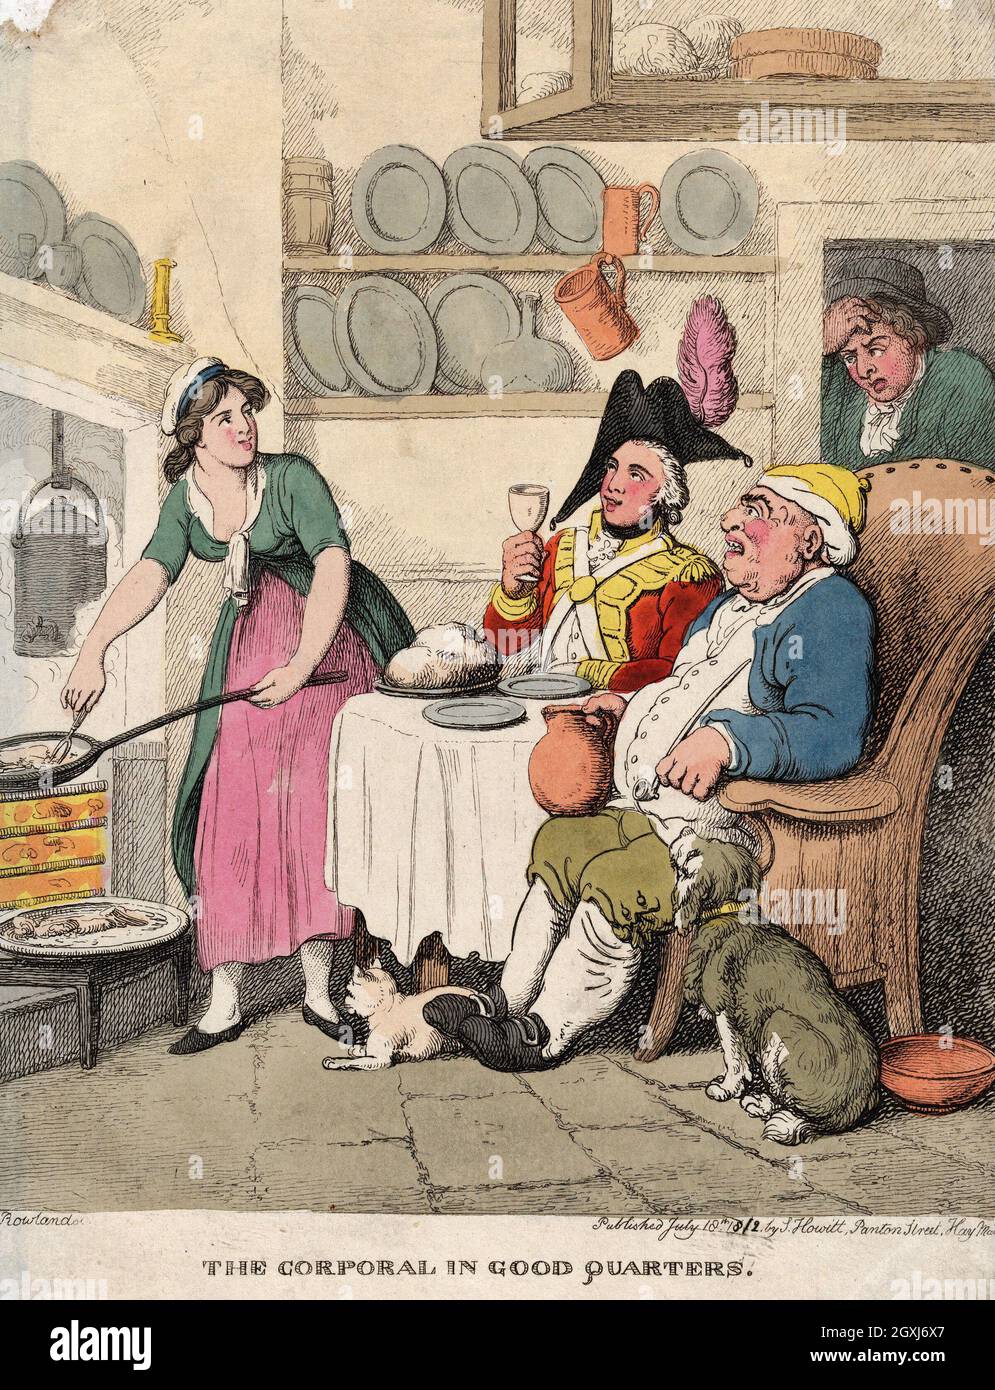 Artista: Thomas Rowlandson (1756-1827) artista e caricaturista inglese dell'epoca georgiana. Osservatore sociale, è stato un artista prolifico e tipografo. Credit: Thomas Rowlandson/Alamy Foto Stock